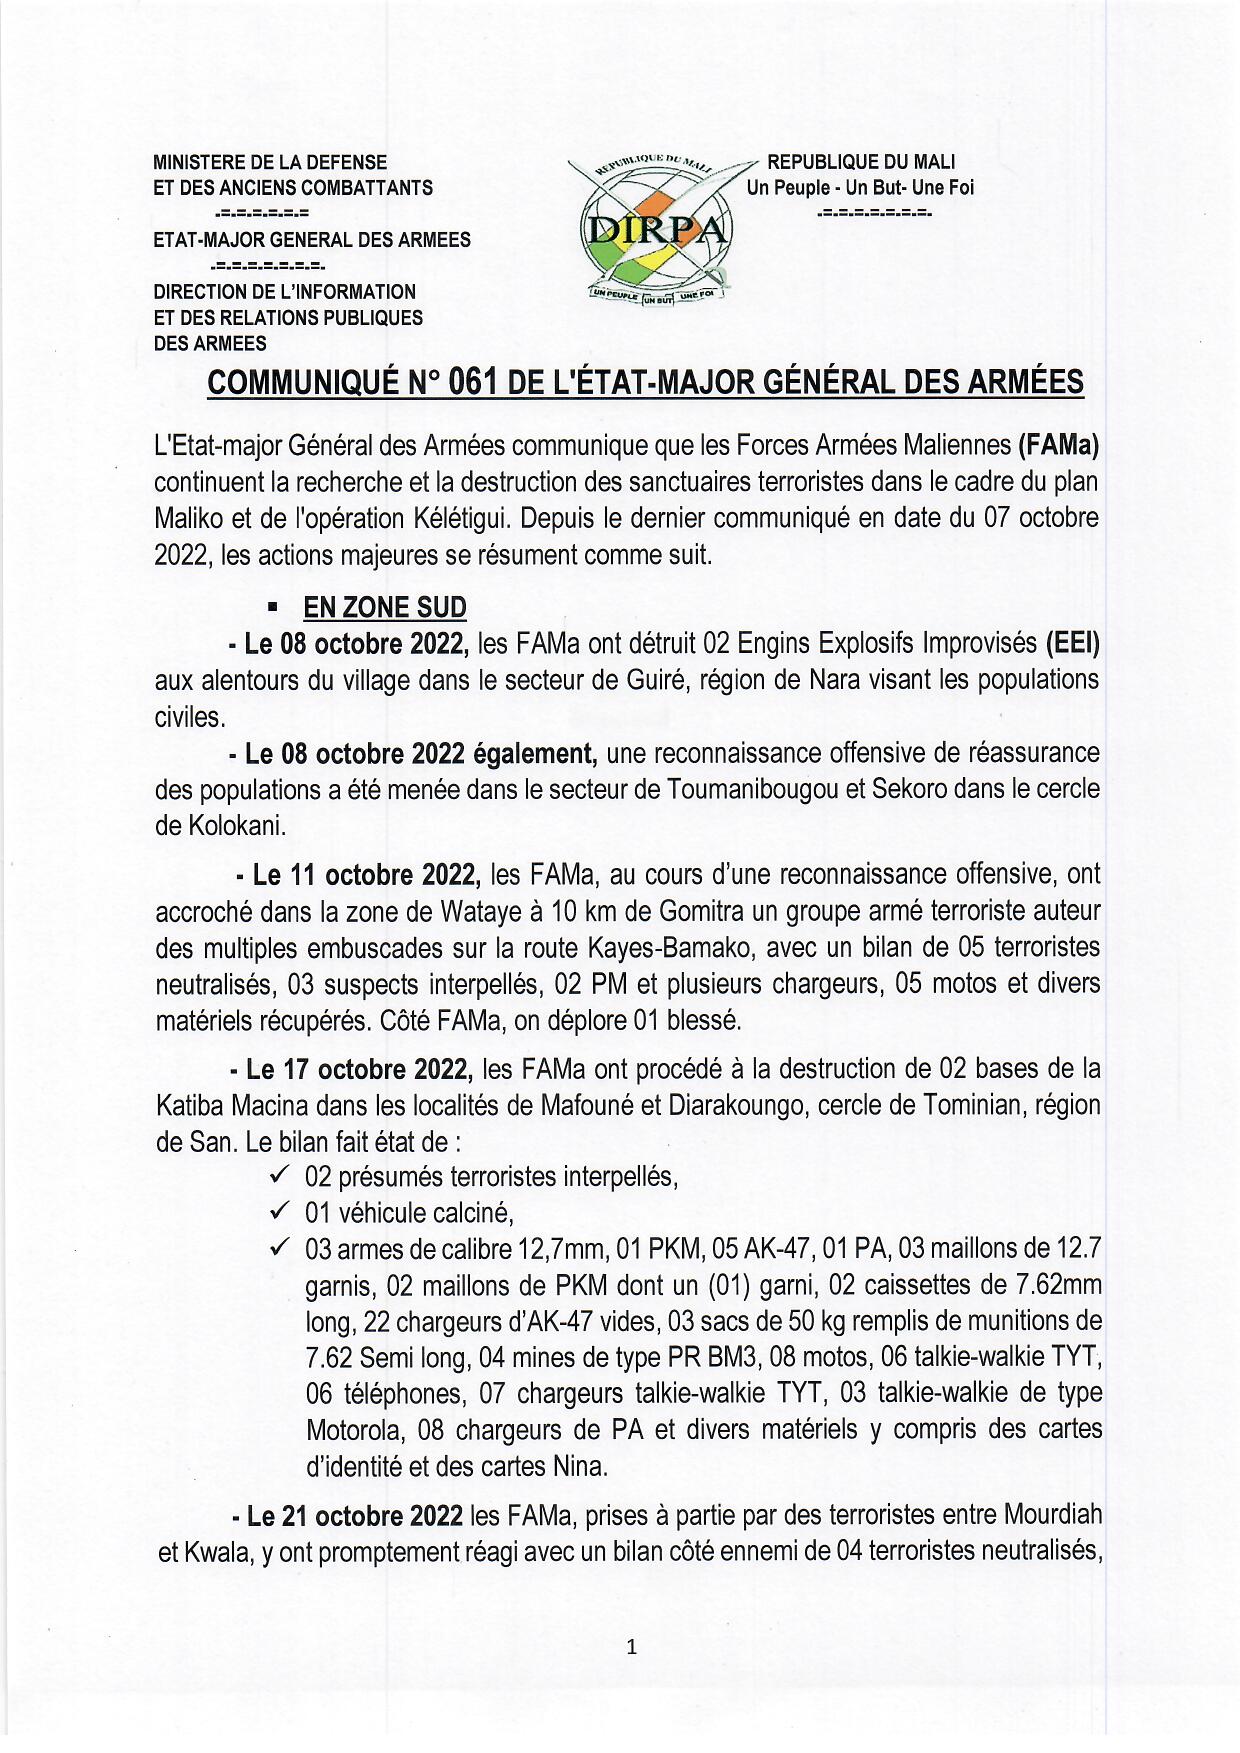  COMMUNIQUE N°061 DE L'ETAT-MAJOR GENERAL DES ARMEES